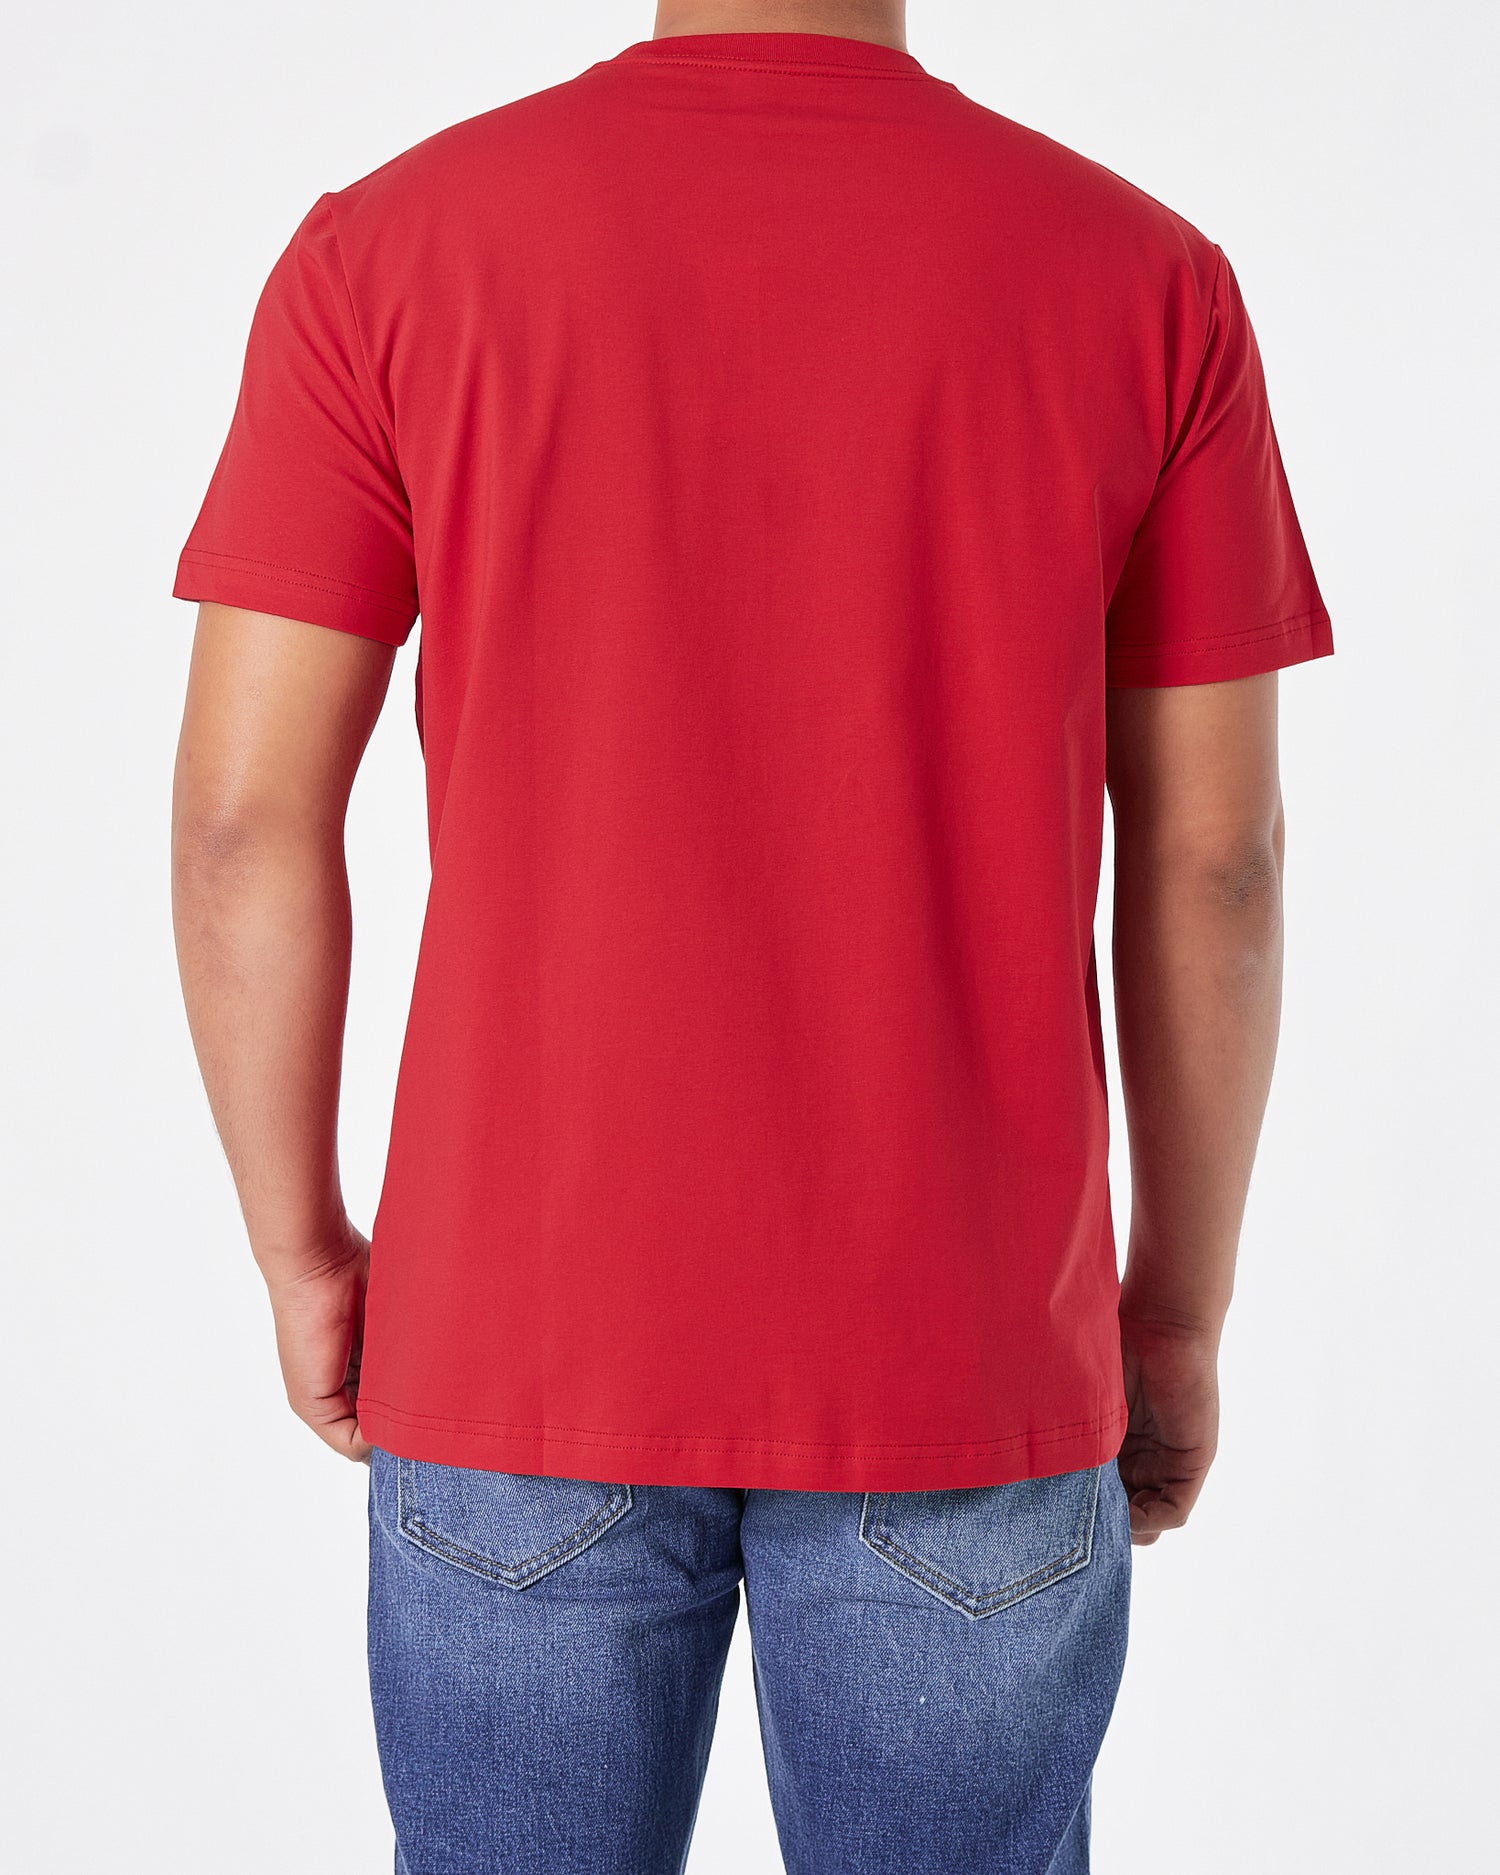 FIL Logo Printed Men Red T-Shirt 15.90